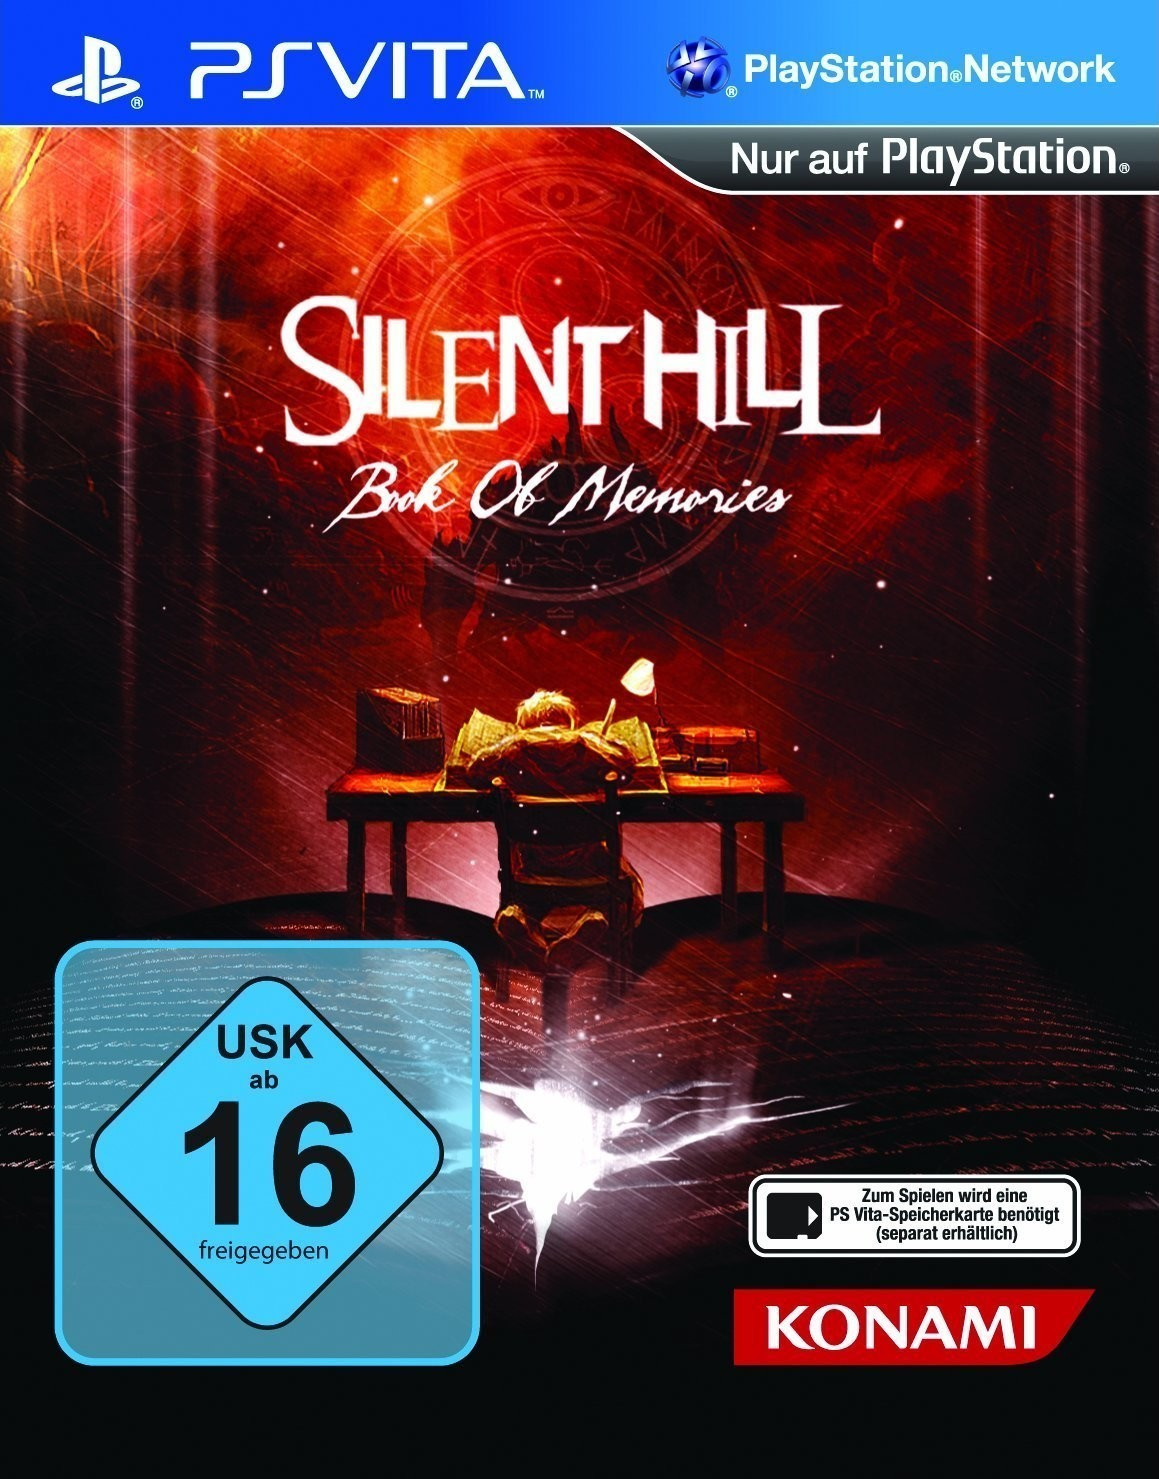 silent hill book of memories vita download free